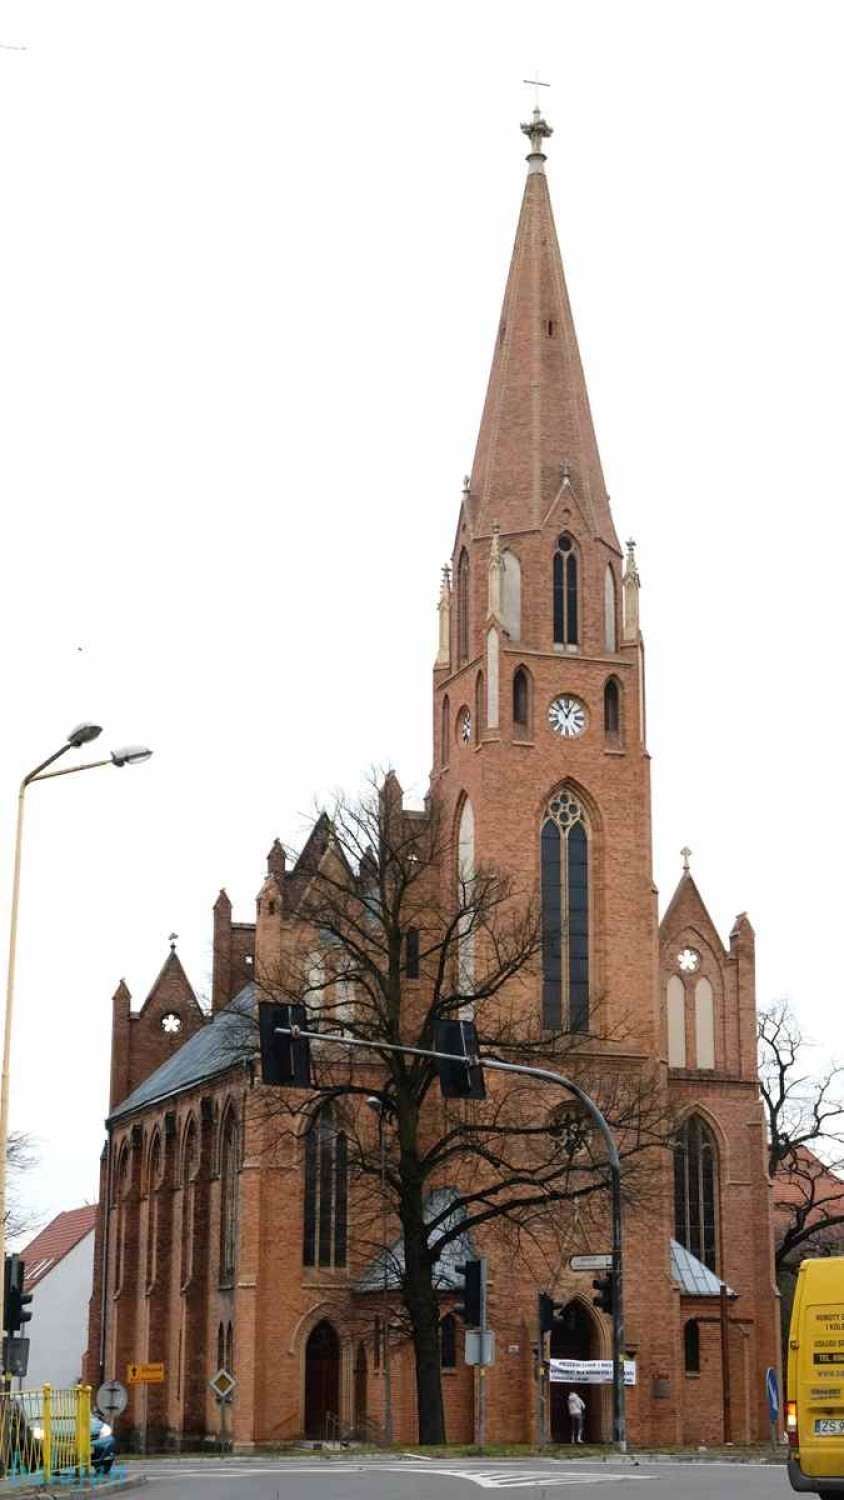 Tak obecnie wygląda kościół pw. Ducha Świętego w Stargardzie na zewnątrz i w środku. Fotoreportaż Jana Balewskiego - 7.03.2021 r.